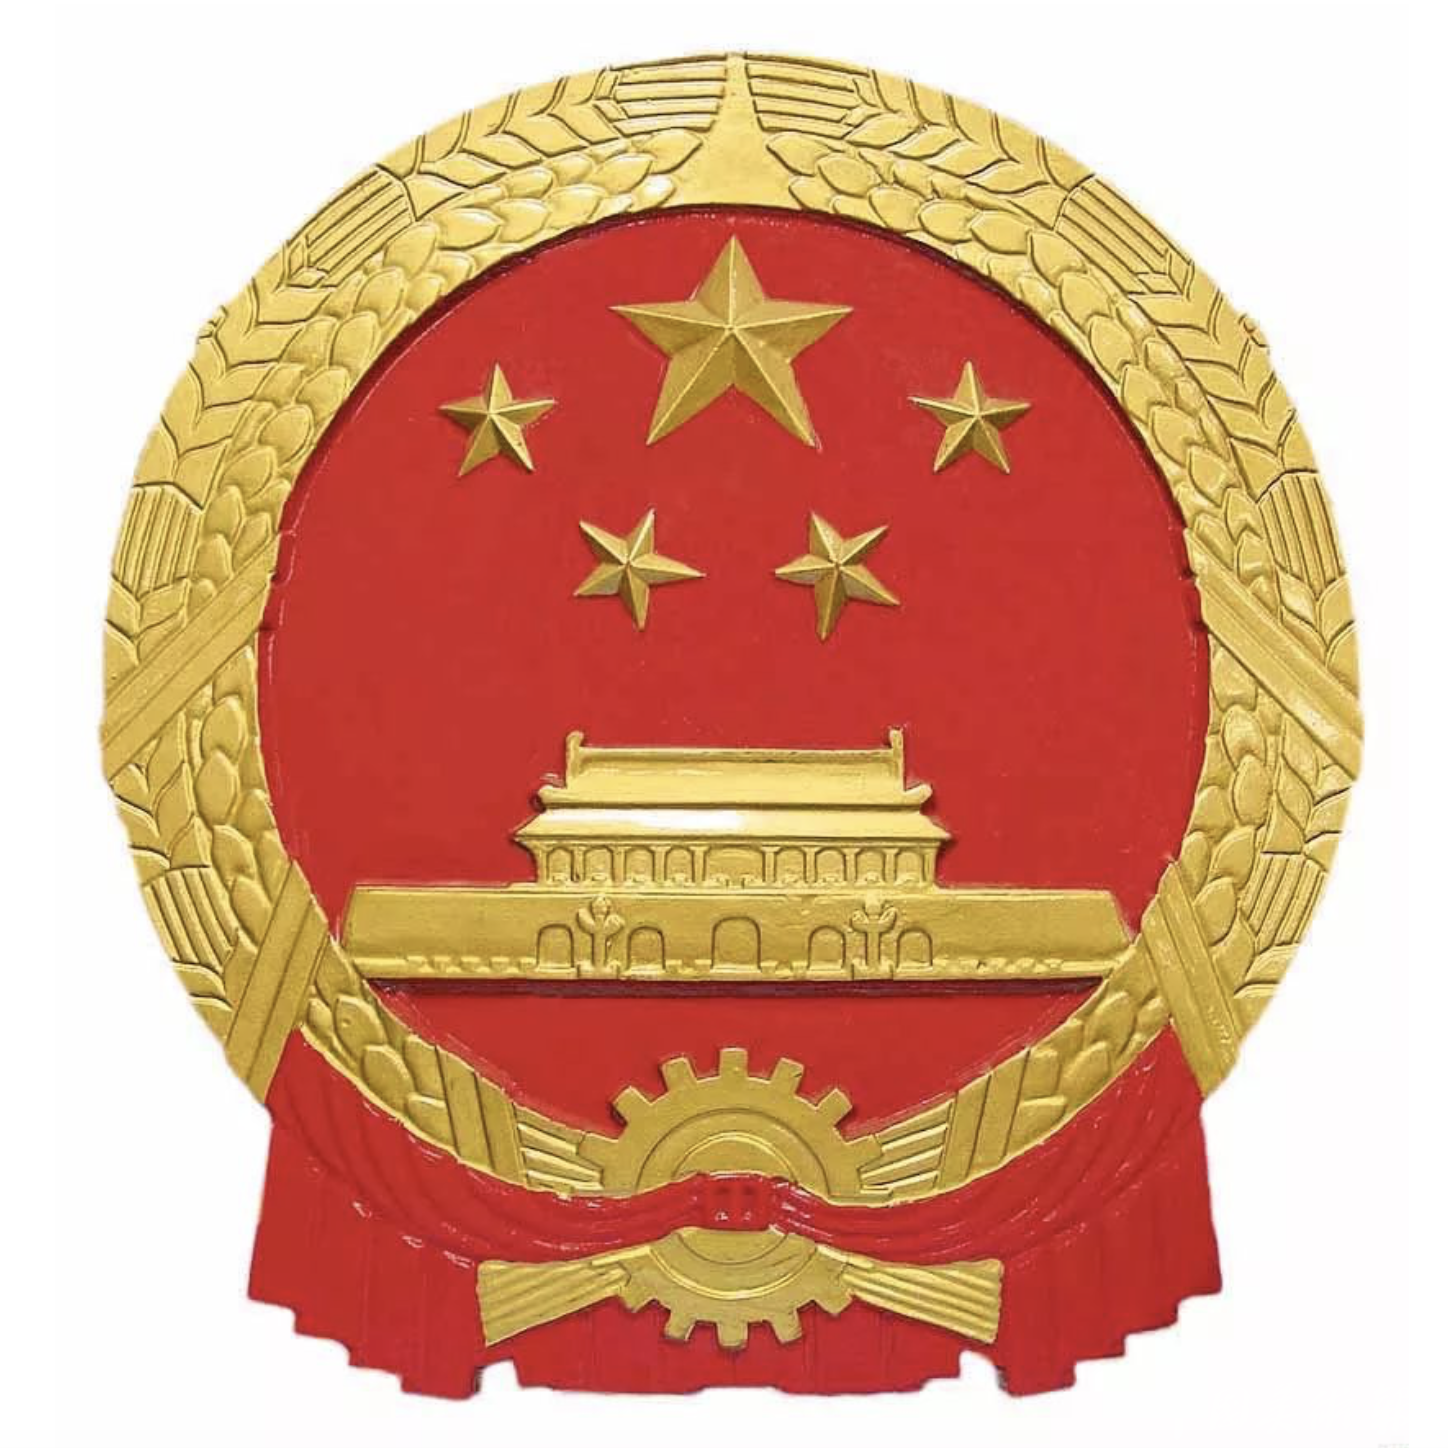 1950年周令钊参加国徽设计1955年的八一勋章,独立自由勋章,解放勋章